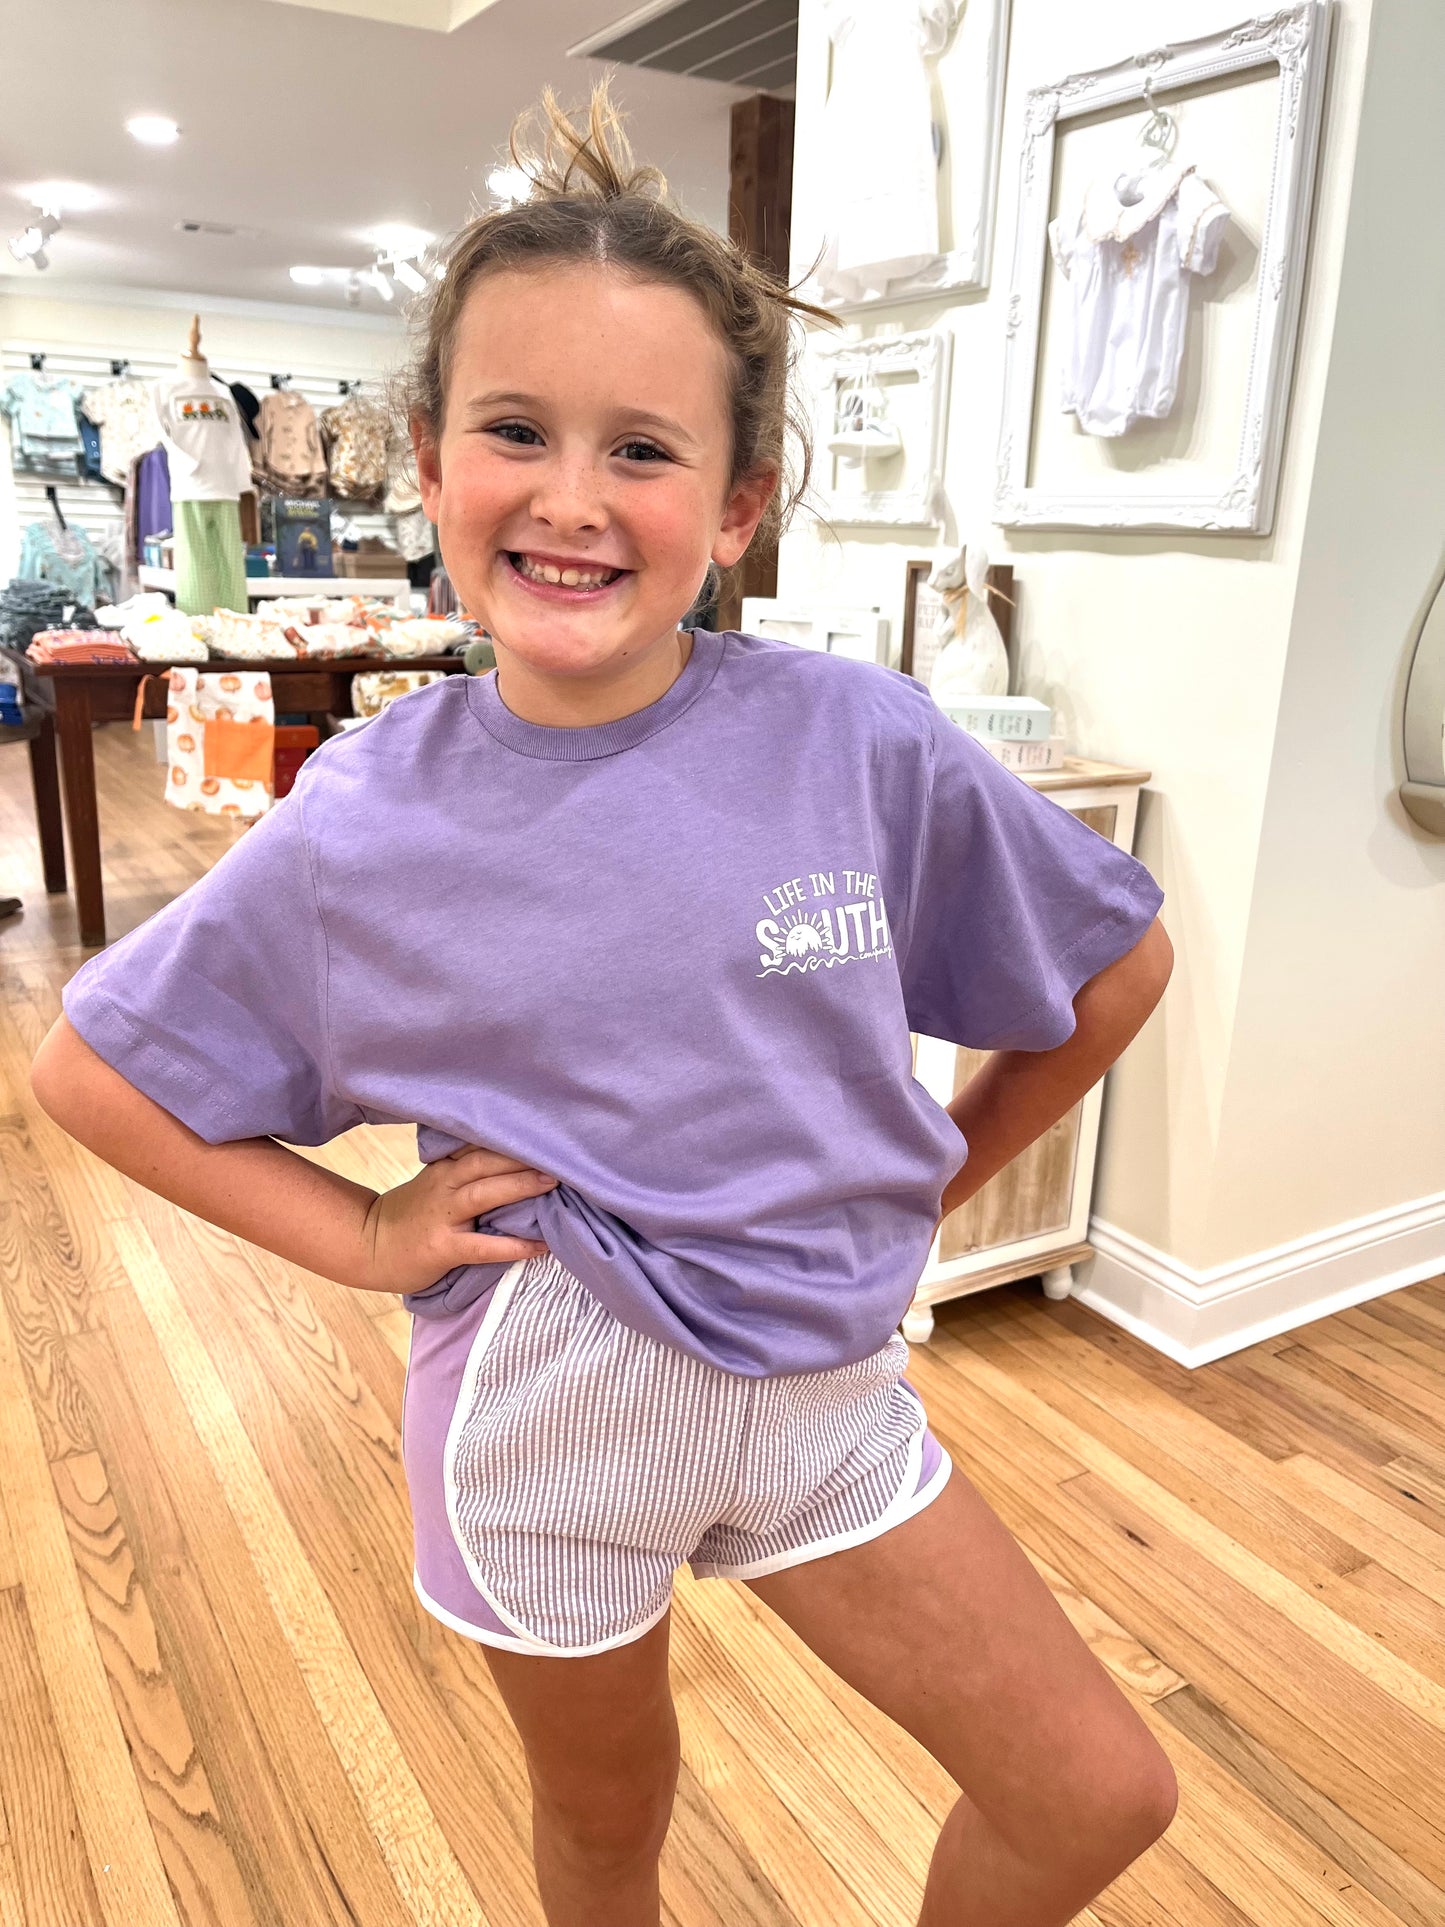 Lavender Seersucker Shorts